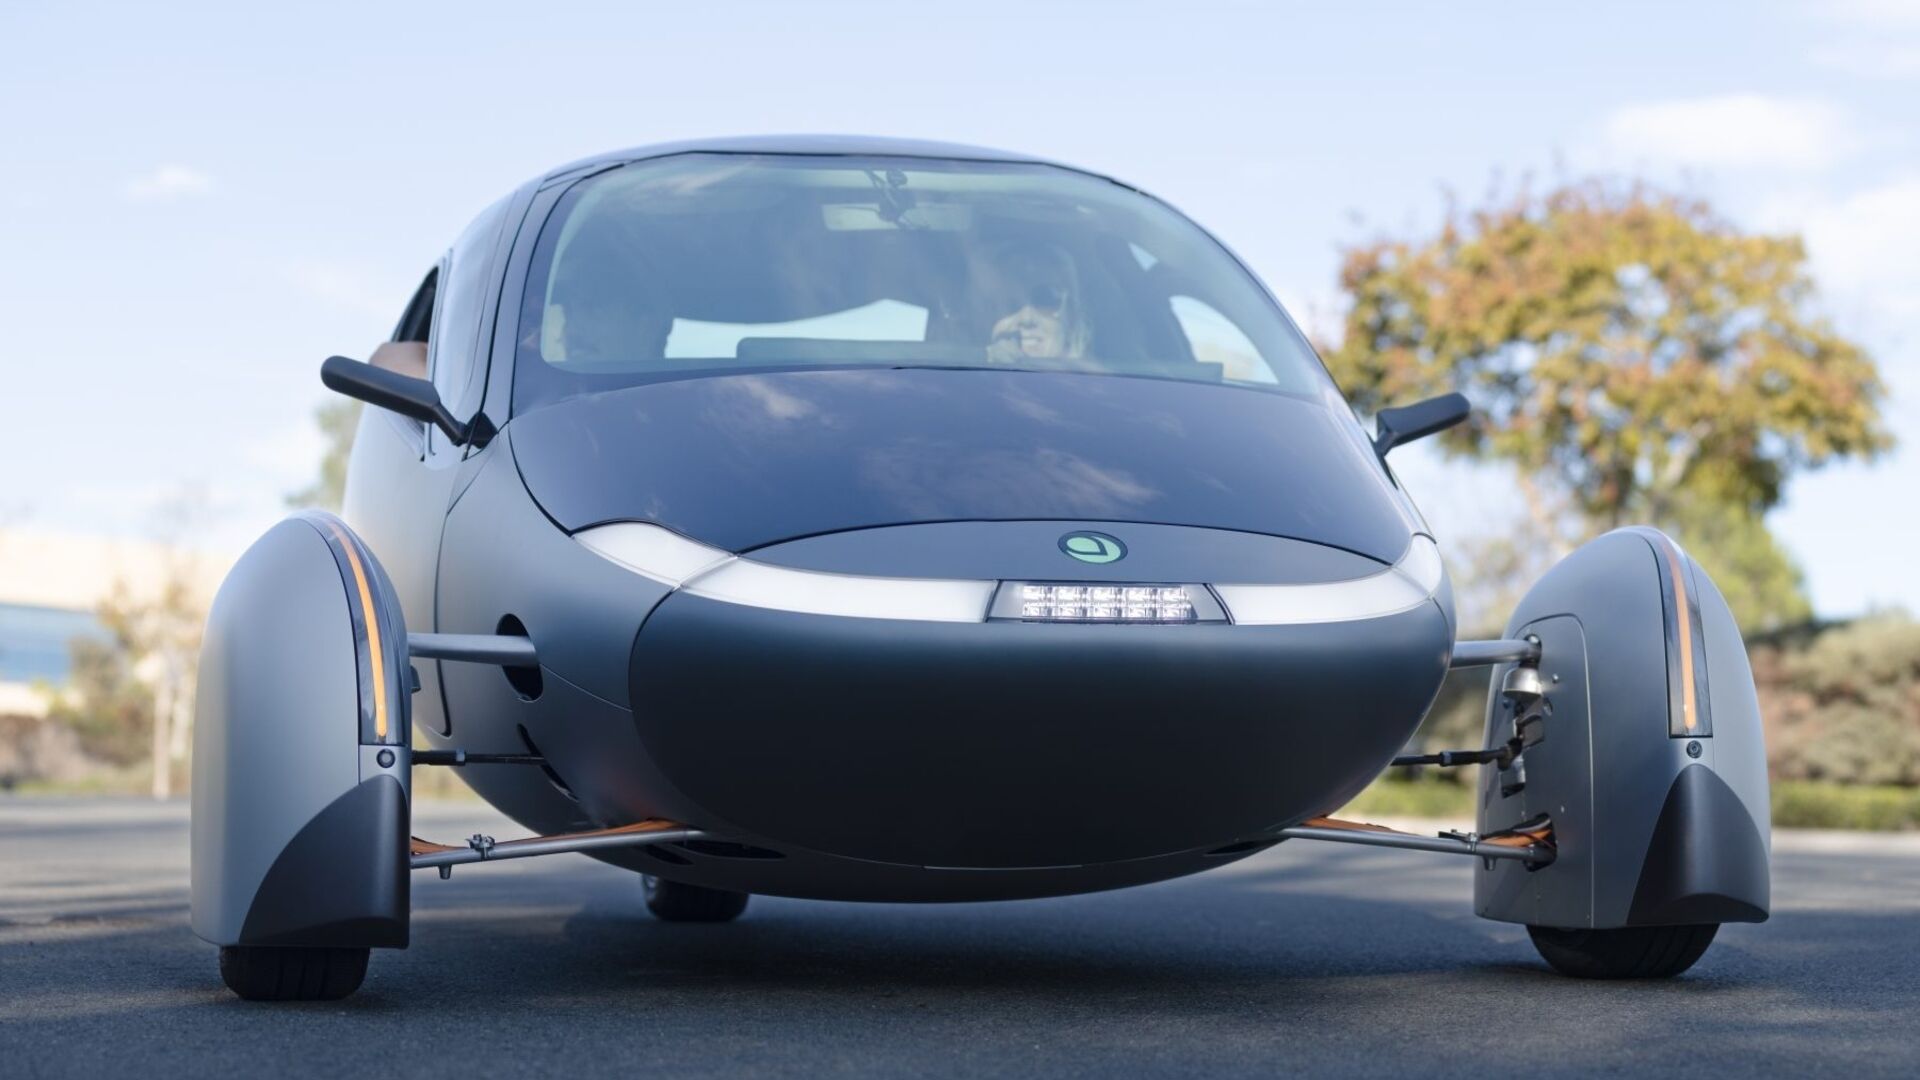 Solarni avto: Aptera Delta je najbolj trajnosten avtomobil na svetu z dosegom 1600 km na baterijsko napajanje in 70 km na sončno energijo